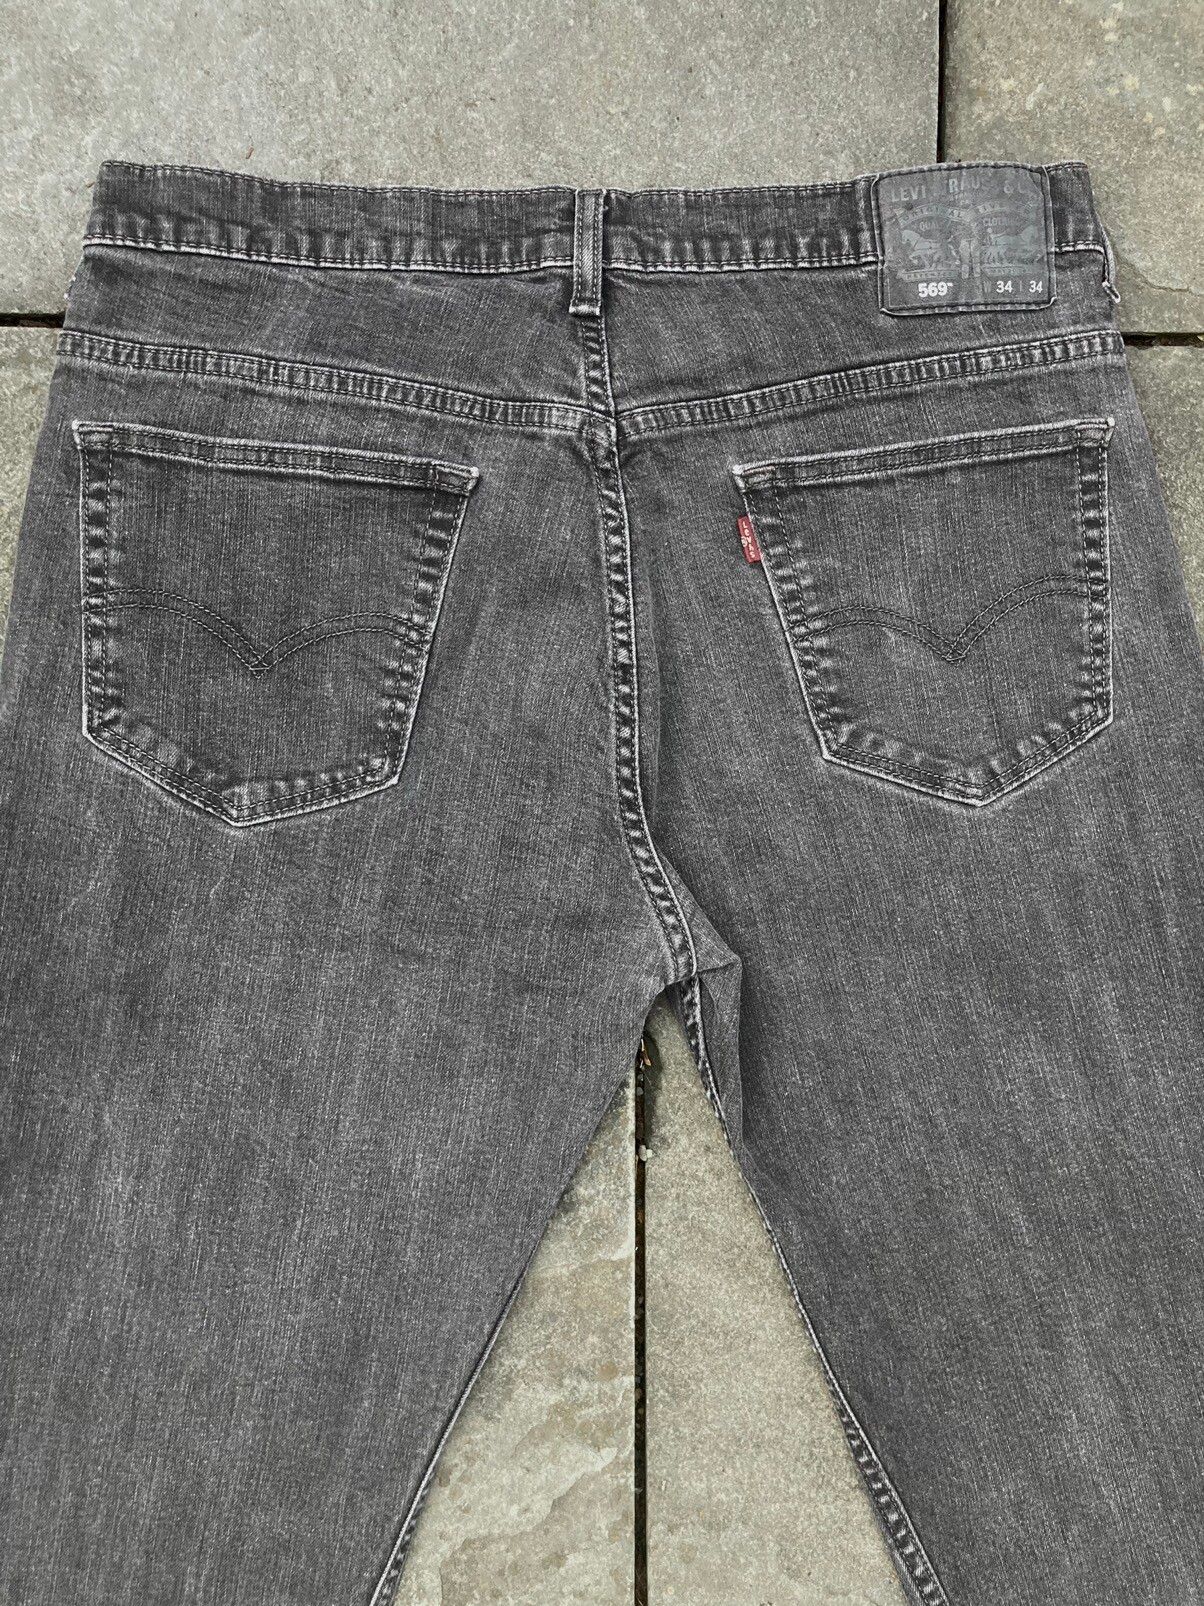 Levi's Levis 569 Grey Wash Denim Jeans Size US 34 / EU 50 - 6 Thumbnail